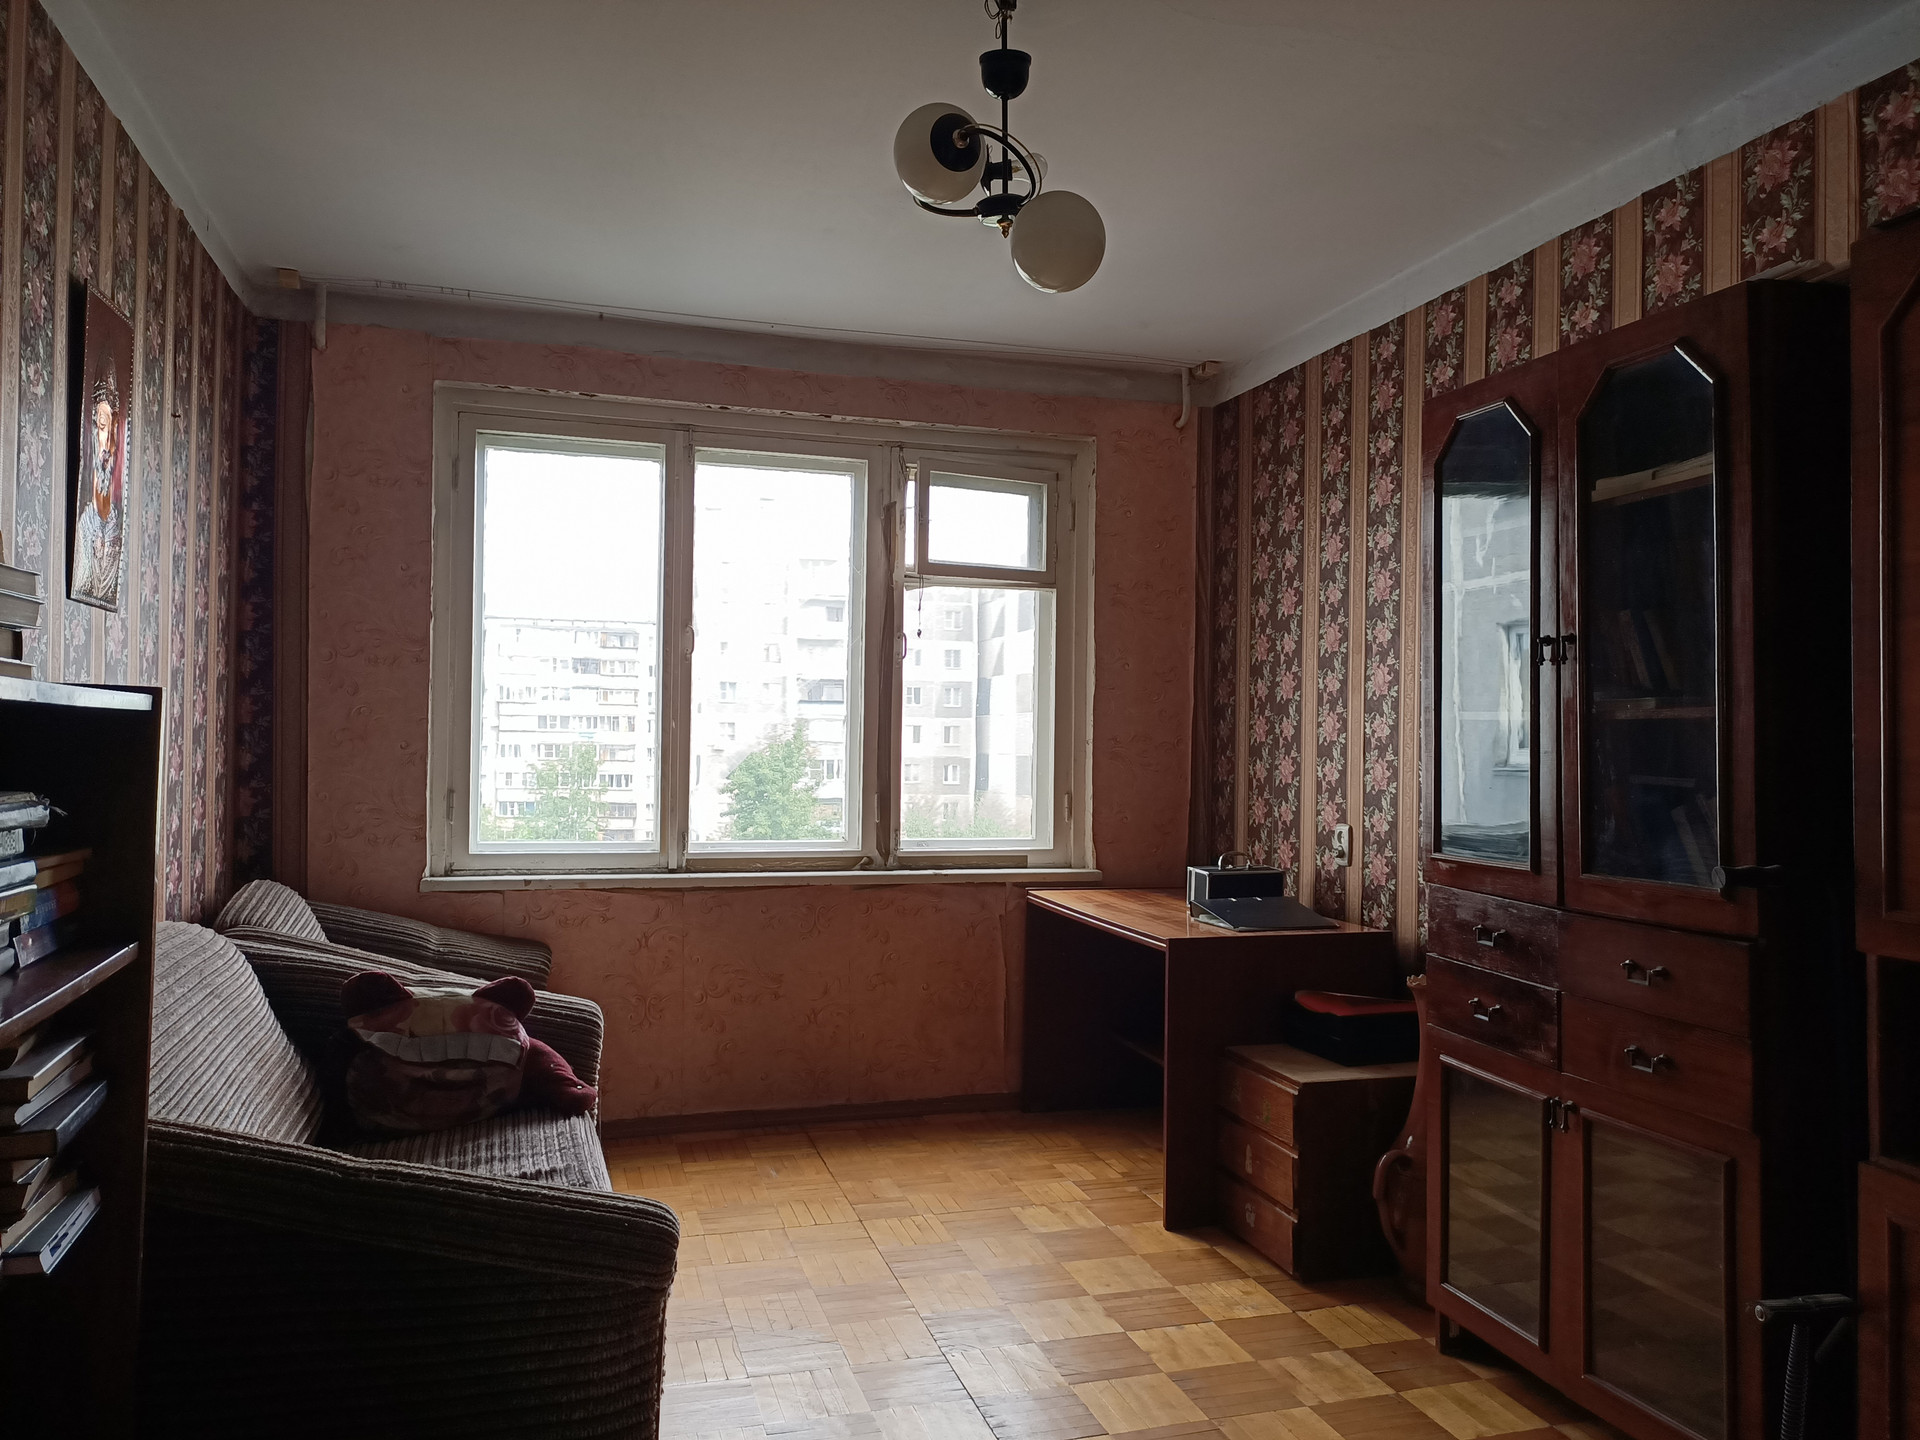 Комсомольский проспект 56а Челябинск купить квартиру.